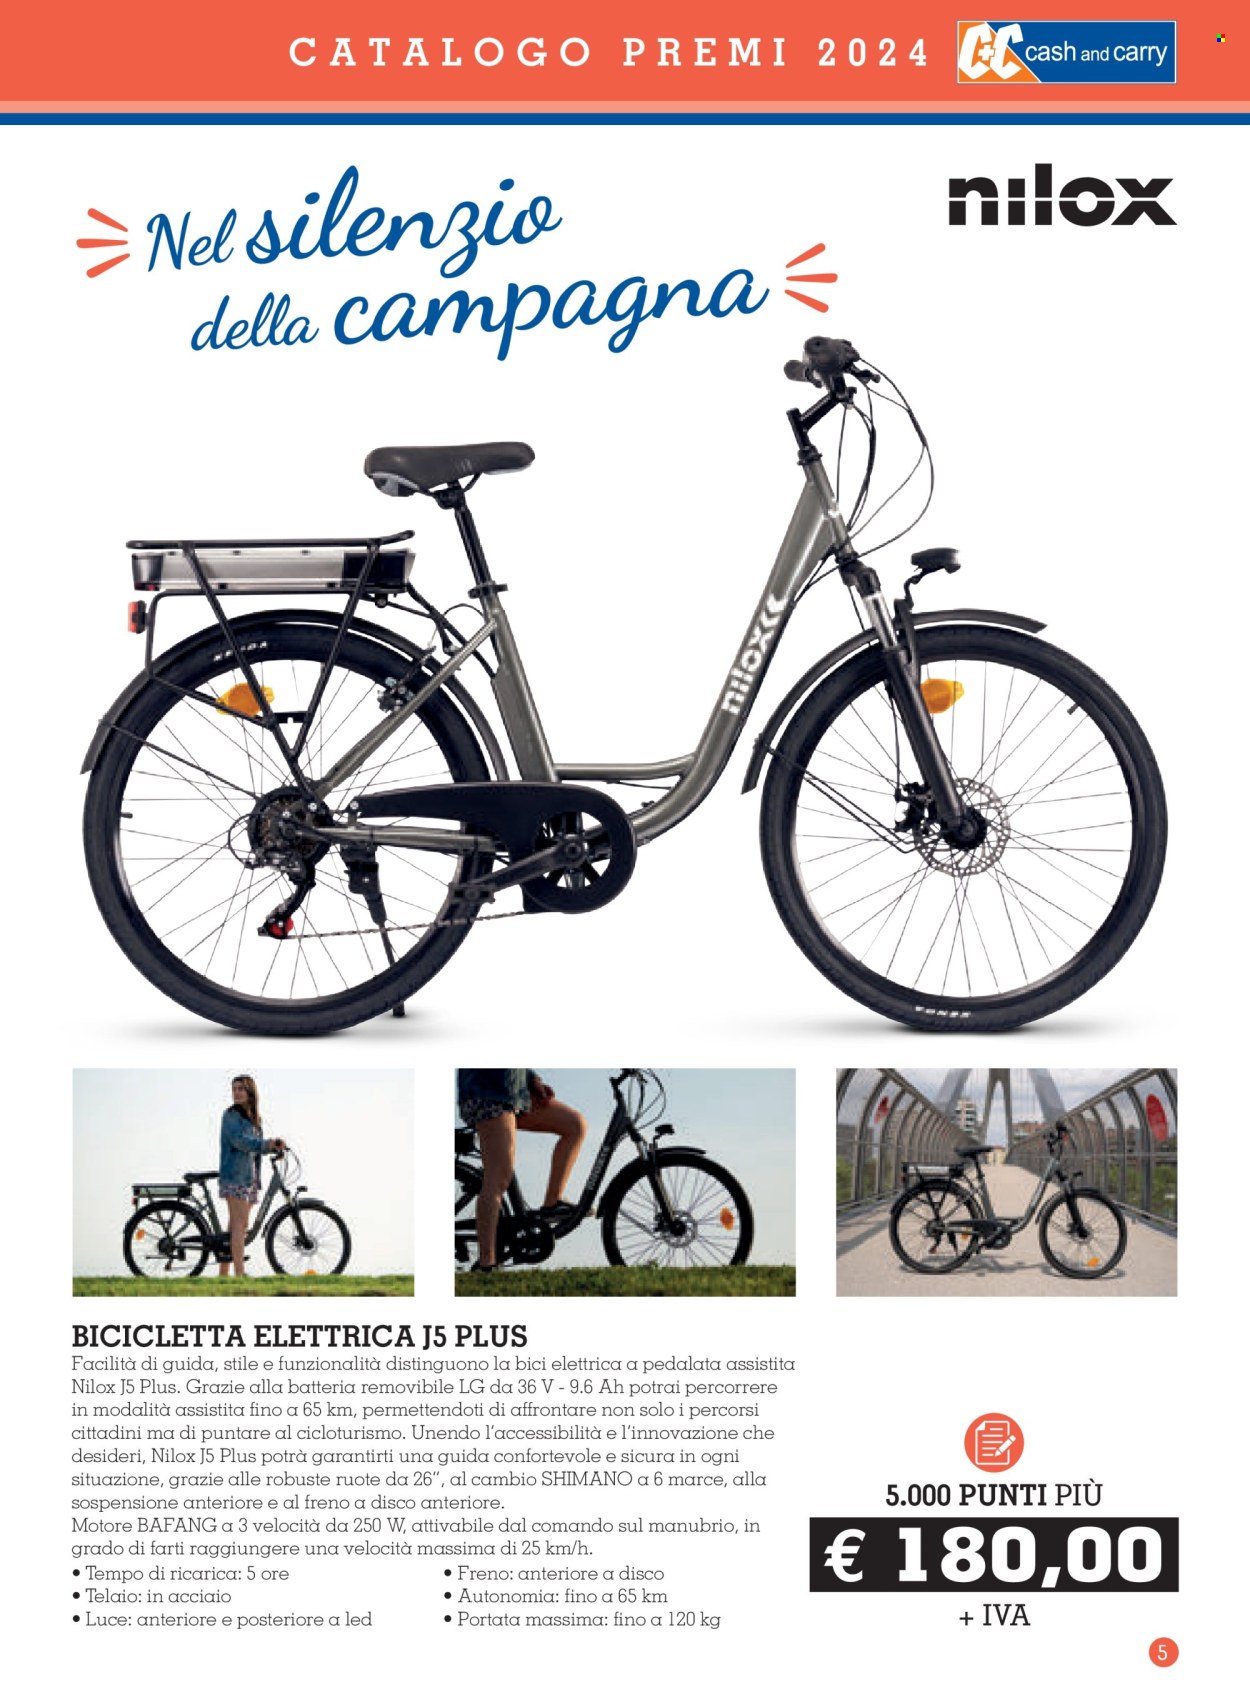 thumbnail - Volantino C+C Cash & Carry - 11/3/2024 - 2/2/2025 - Prodotti in offerta - Shimano, LG, bici elettrica, Nilox, bicicletta. Pagina 5.